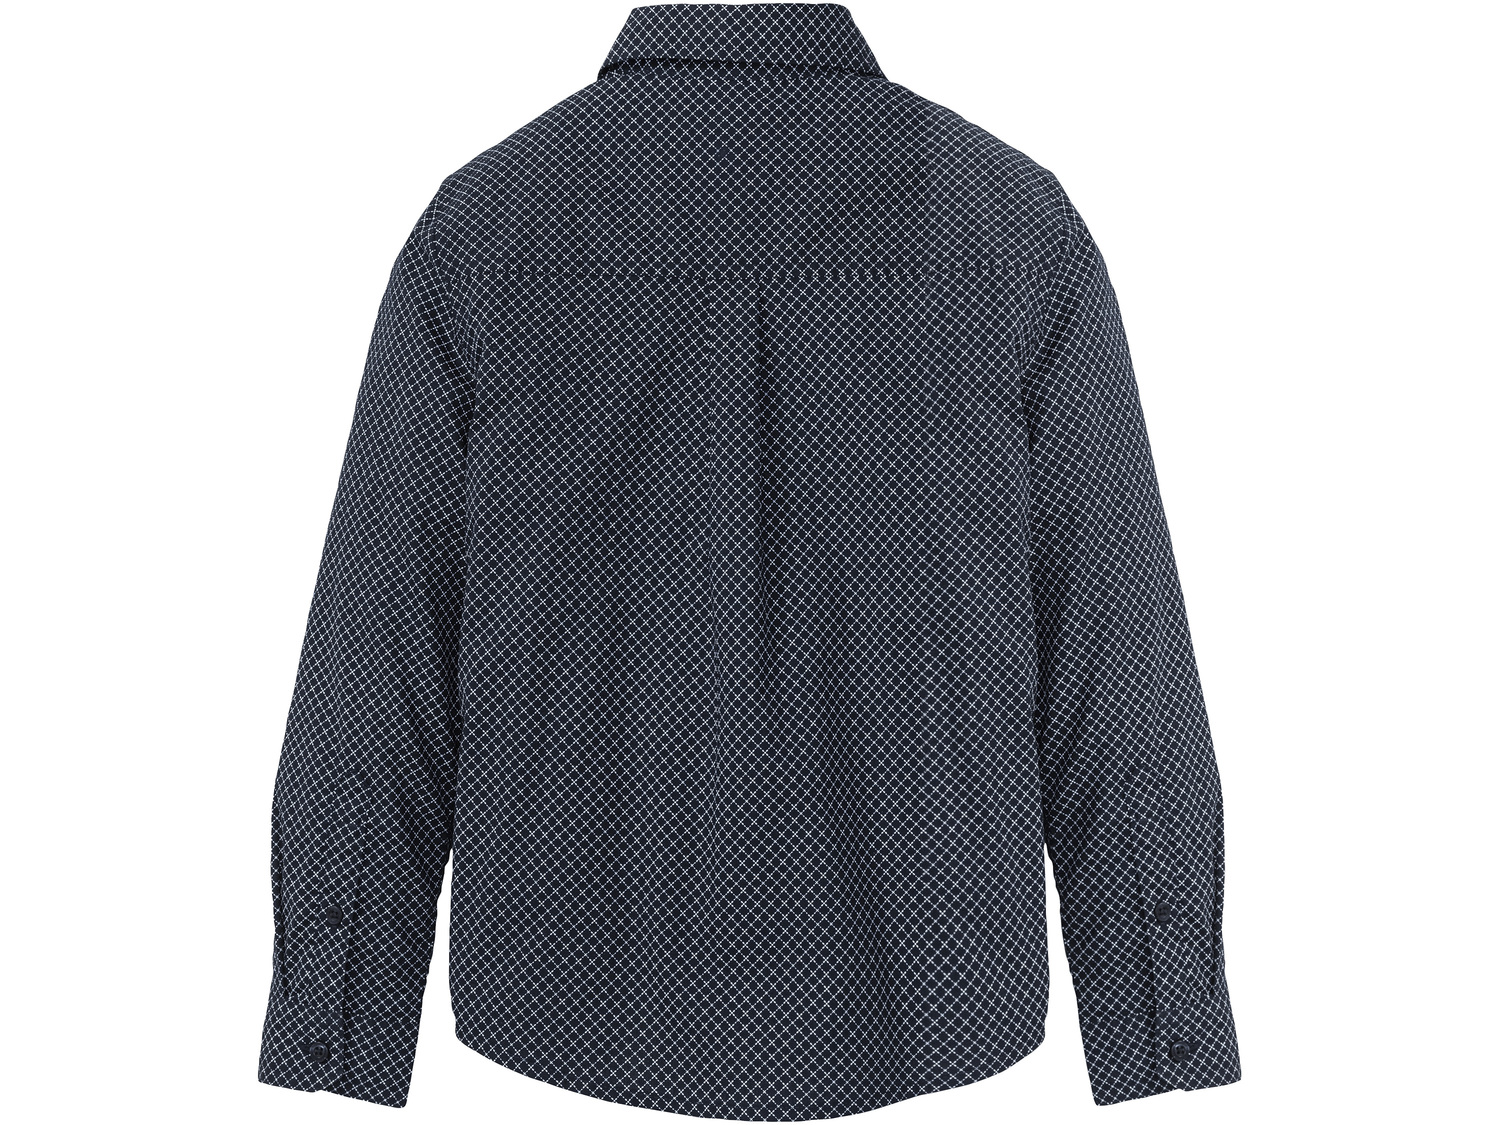 Koszula chłopięca z krawatem Pepperts, cena 29,99 PLN 
- koszula: 100% bawełny, ...